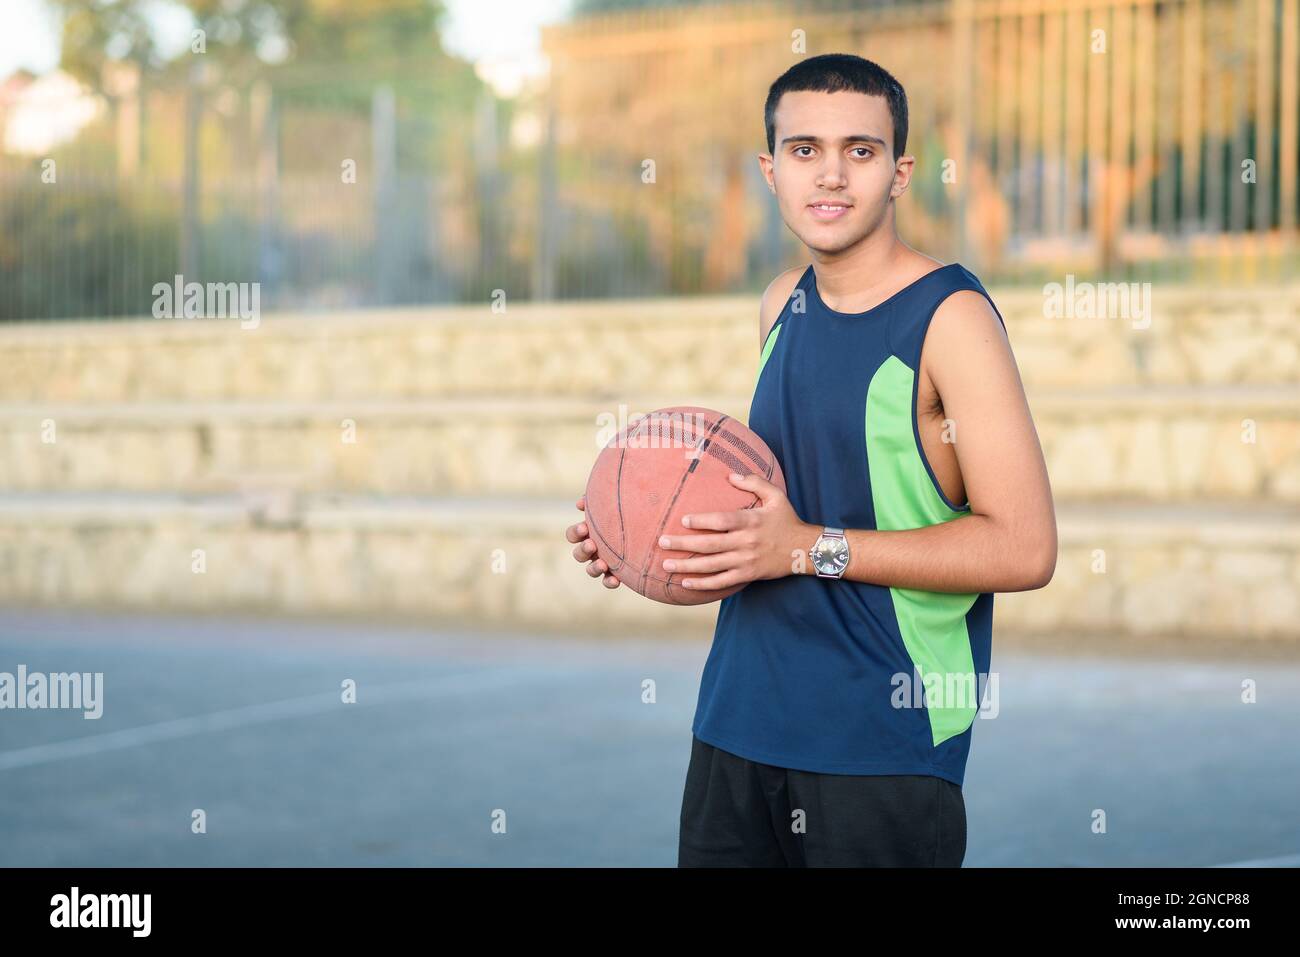 Kleines Kind mit Basketball. Fröhlicher Teenager mit Basketball auf dem Basketballplatz bei Sonnenuntergang. Stockfoto